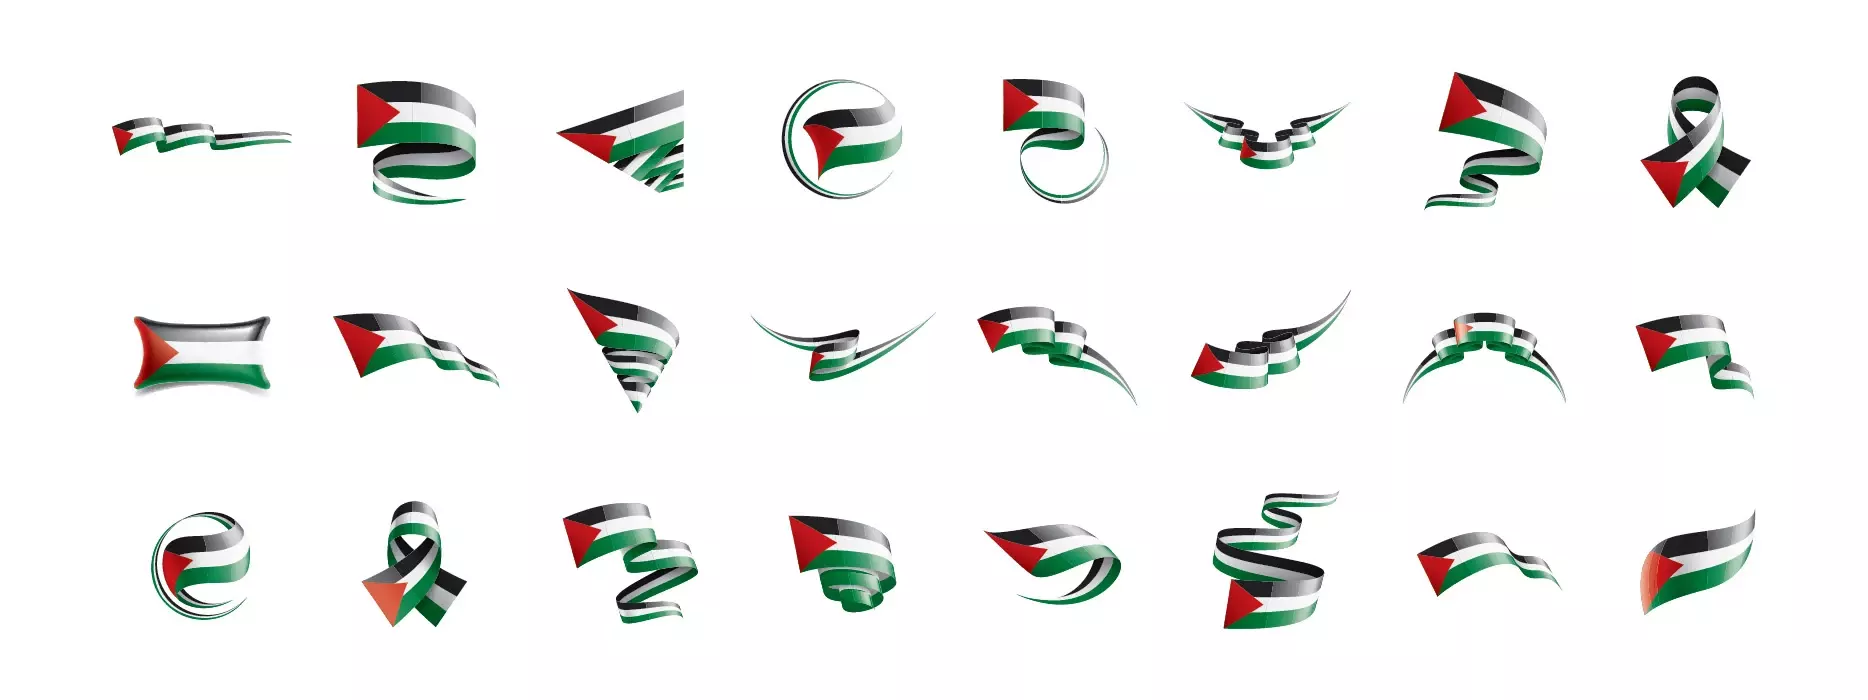 دانلود وکتور کلکسیون پرچم های فلسطین